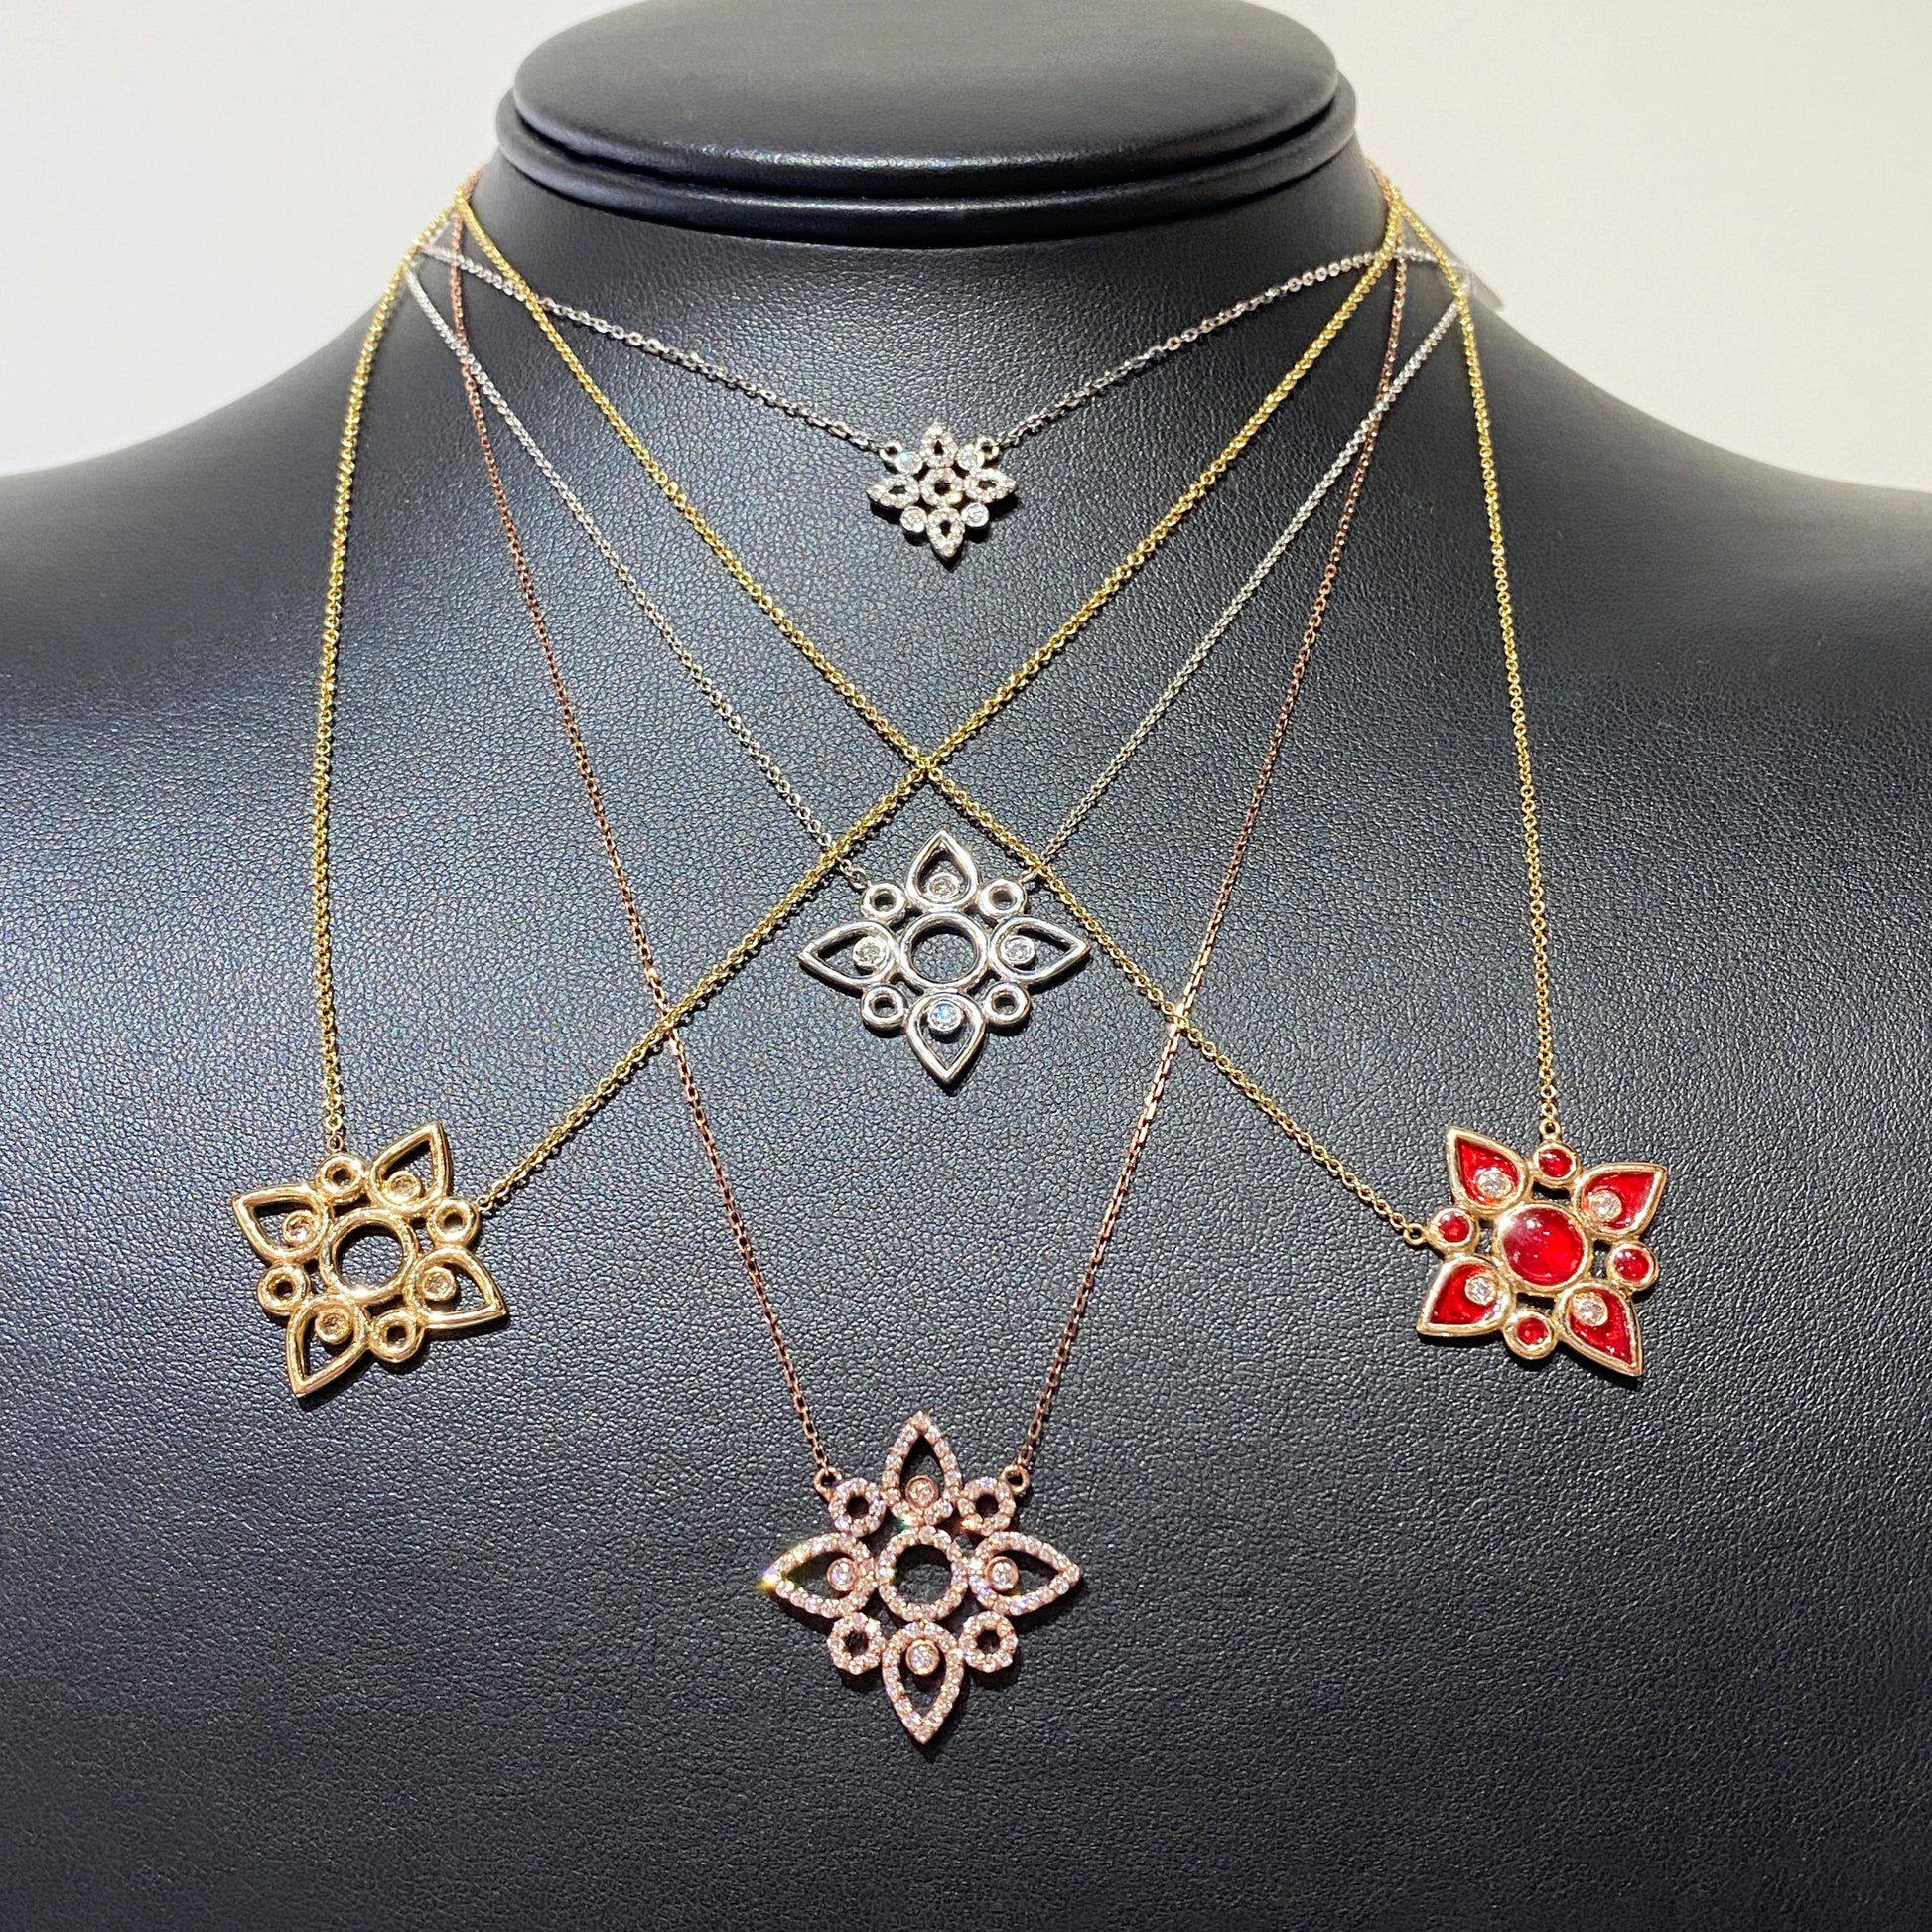 18kw Diamond Flower Necklace by Ferro & Fiori - eklektic jewelry studio